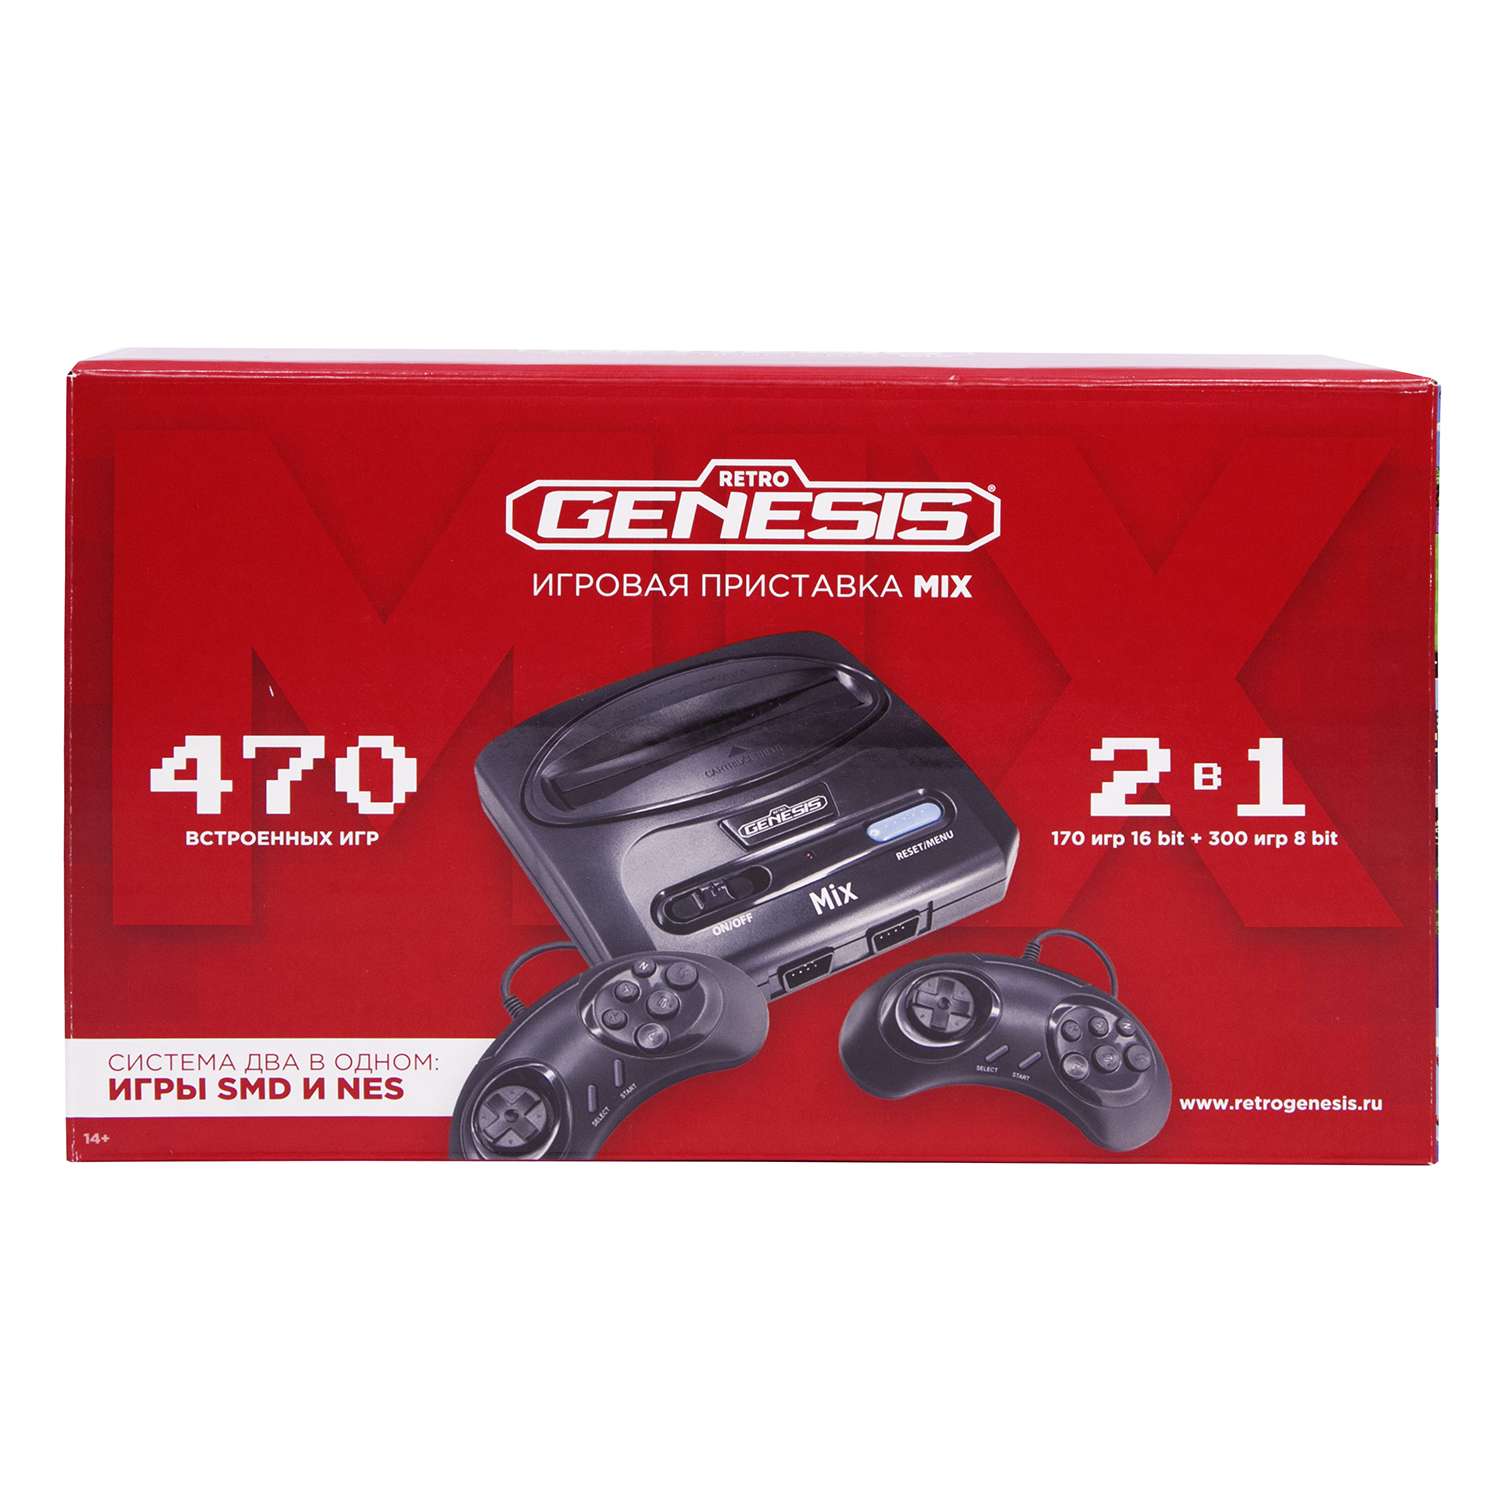 Игровая приставка для детей Retro Genesis Mix 8+16Bit + 470 игр AV 2 проводных джойстика - фото 3